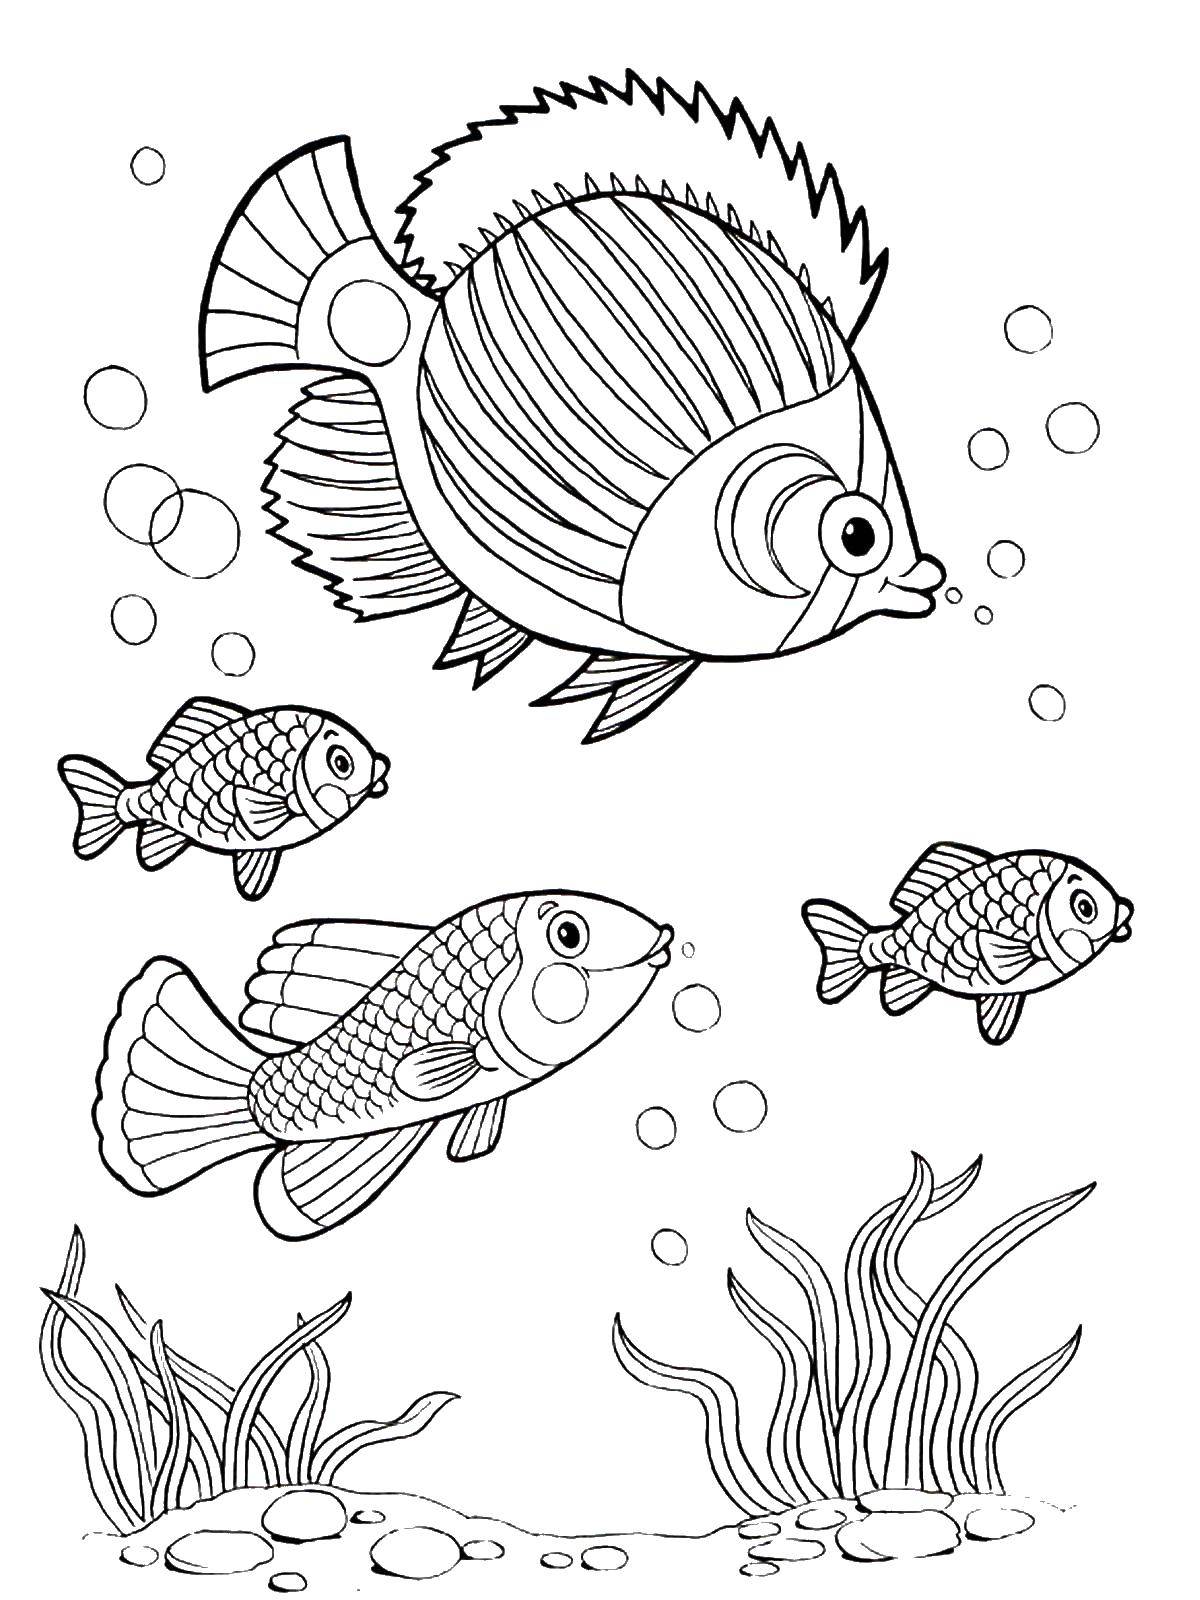 Раскраска рыбки для детей 5 6 лет. Рыба раскраска. Раскраска рыбка. Аквариумные рыбки раскраска для детей. Рыба раскраска для детей.